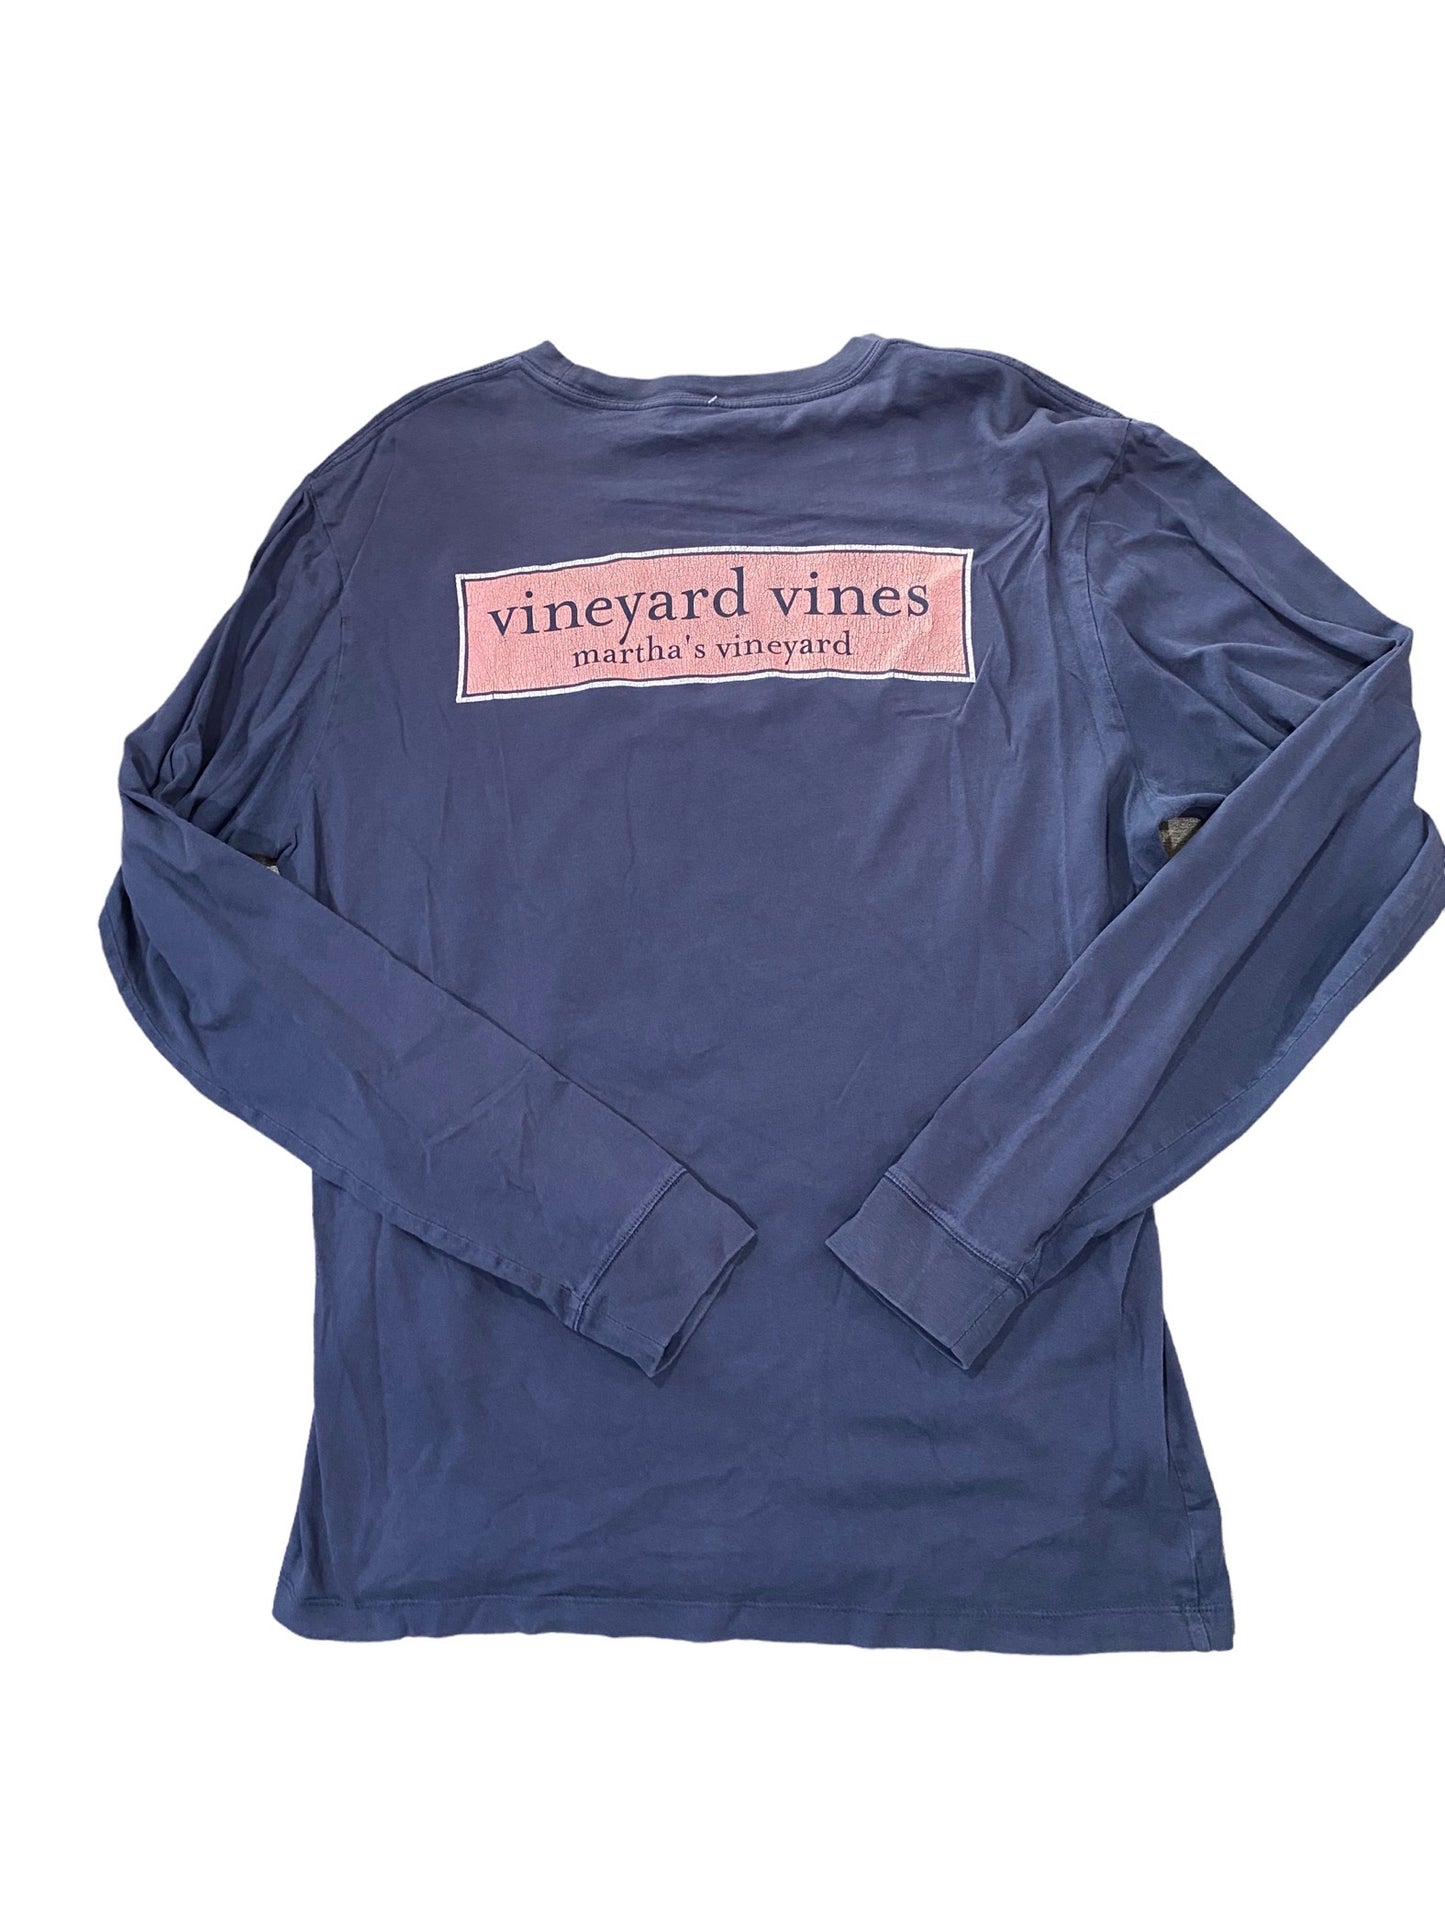 vineyard vines long sleeve